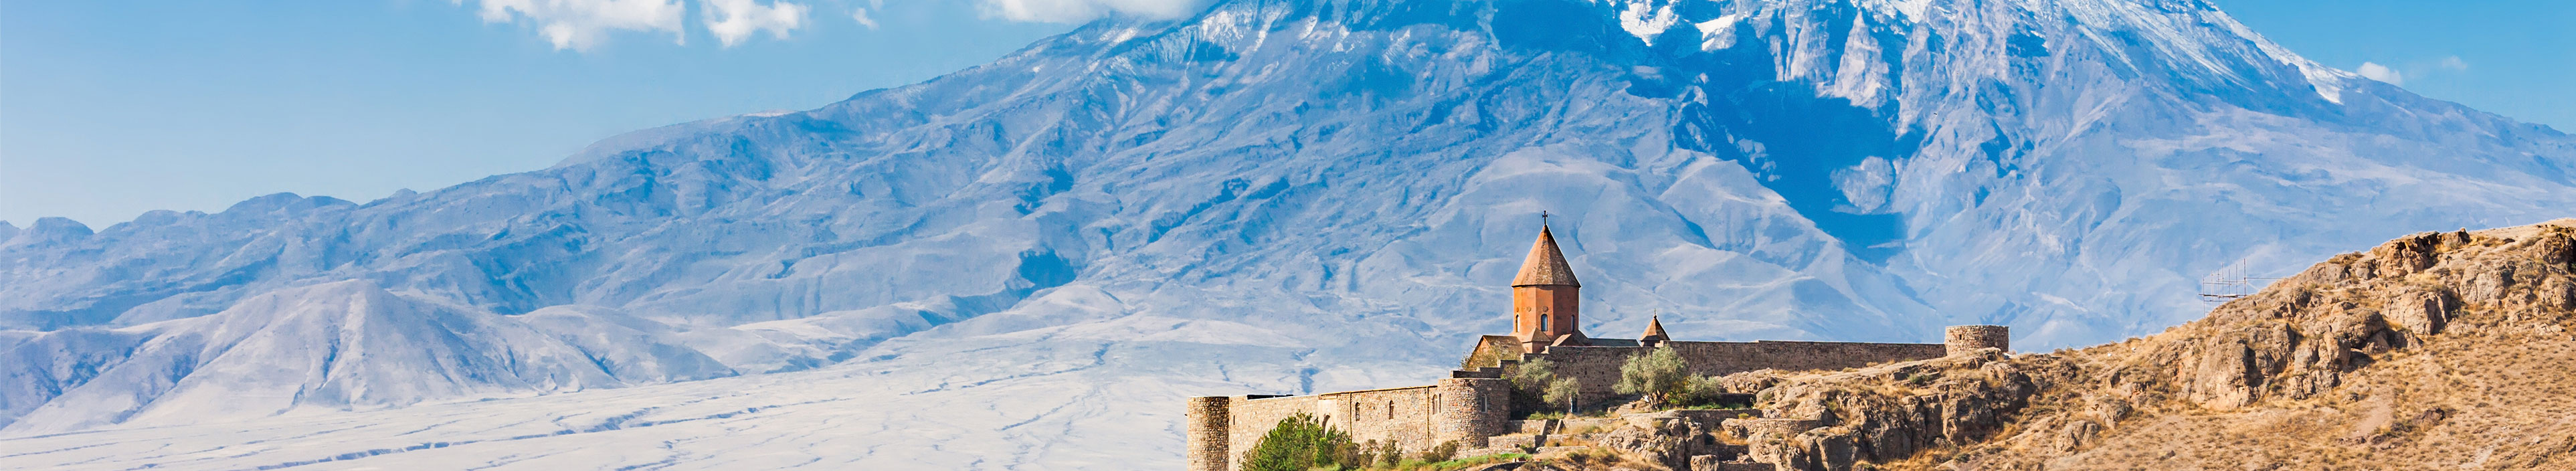 Kloster Khor Virap in Armenien